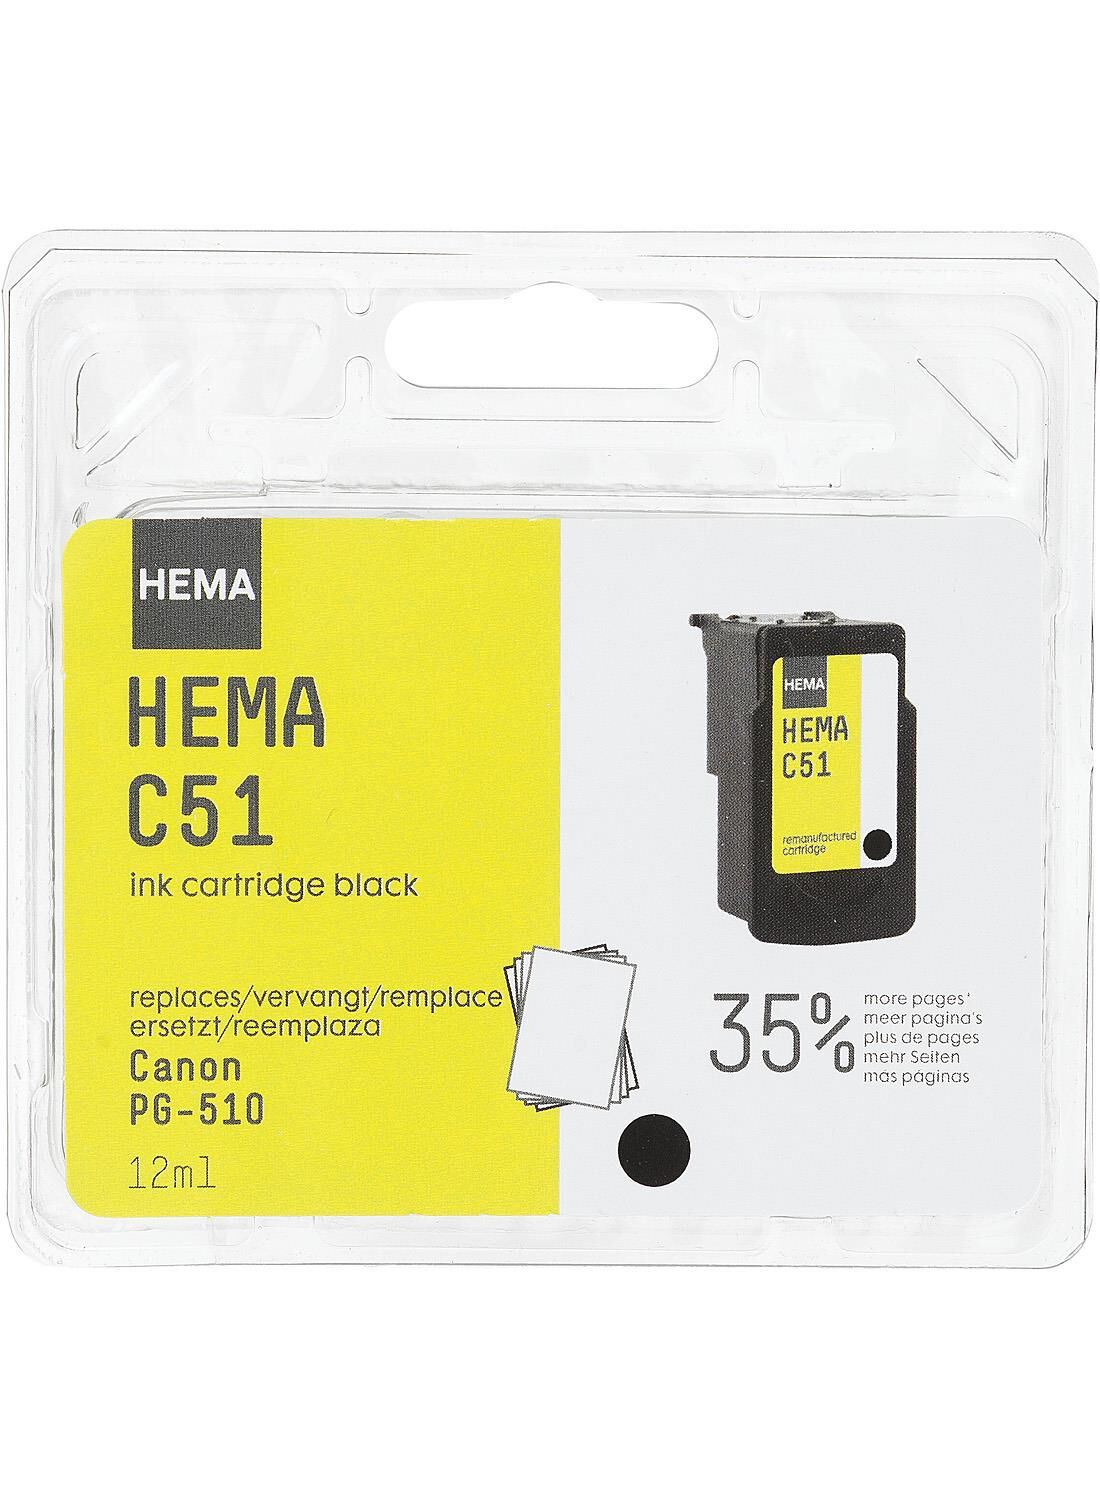 HEMA HEMA Cartridge C51 Voor De Canon PG-510